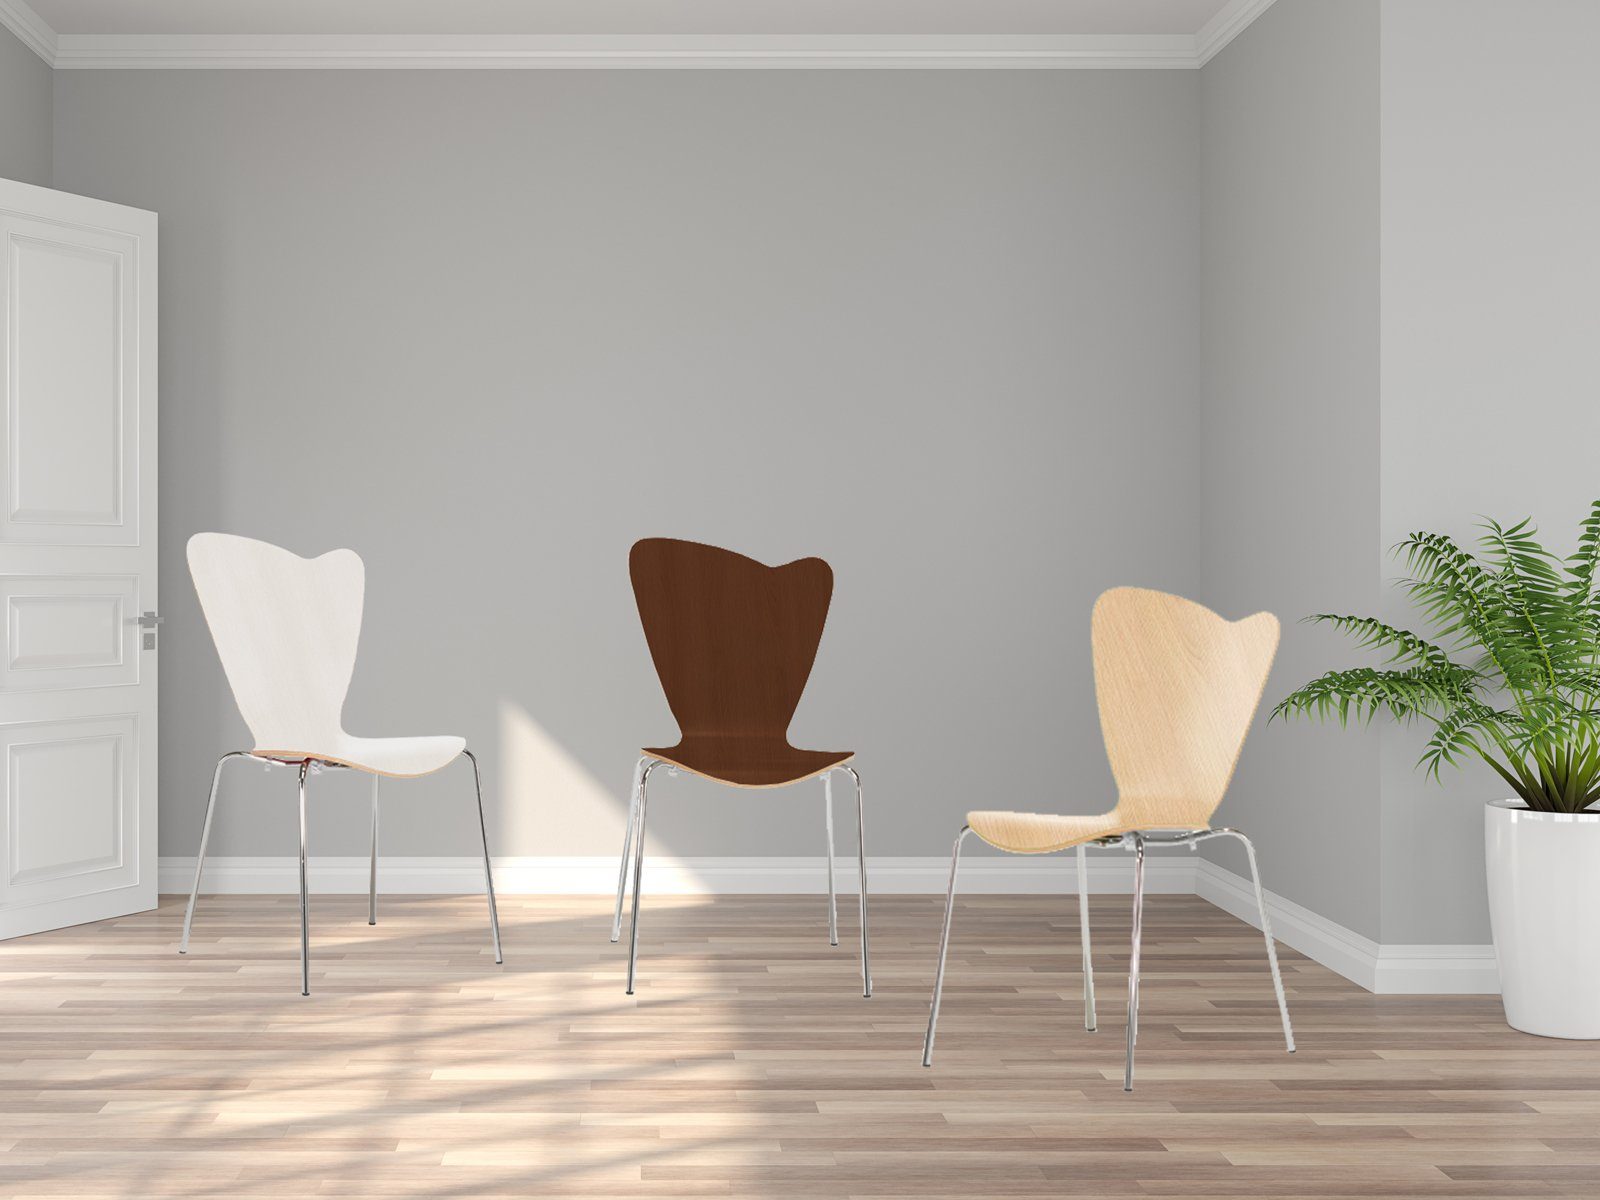 Mauser Sitzkultur Stapelstuhl, ergonomisch-er Schalenstuhl Weiß Wartezimmerstuhl, Bistro-stuhl Gastro